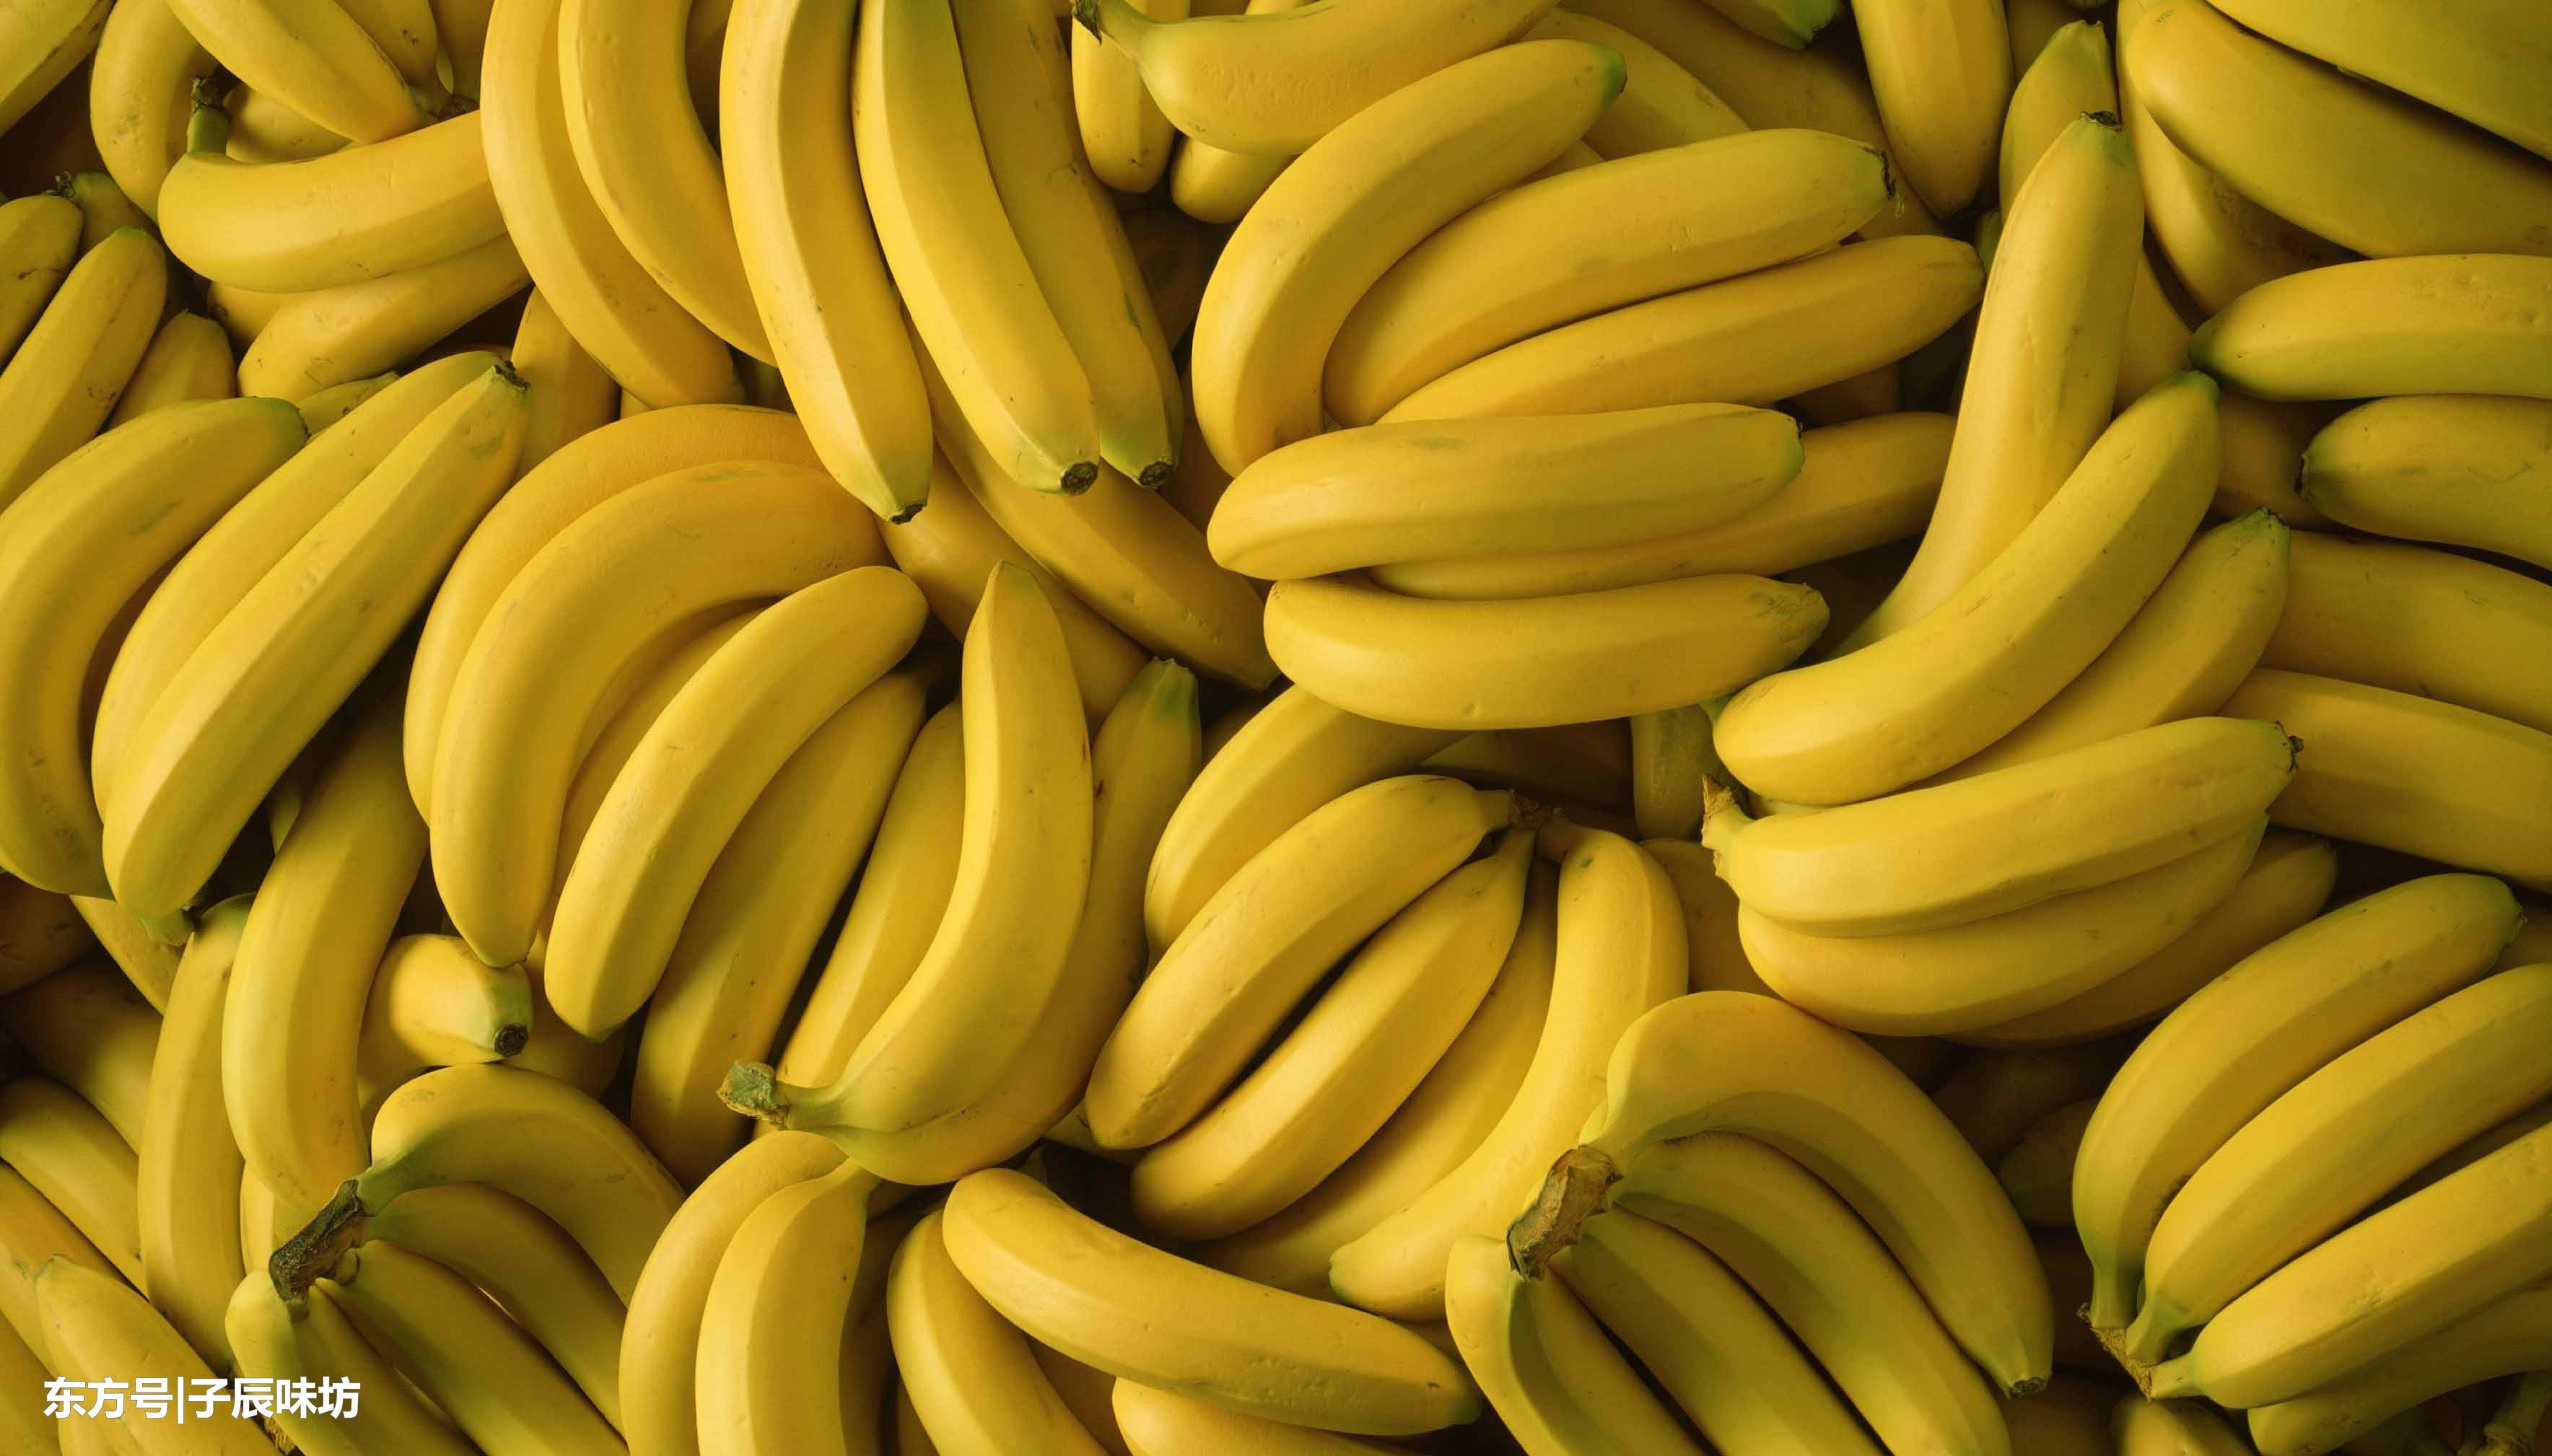 经常吃香蕉对身体好处多,增强人体免疫力降血